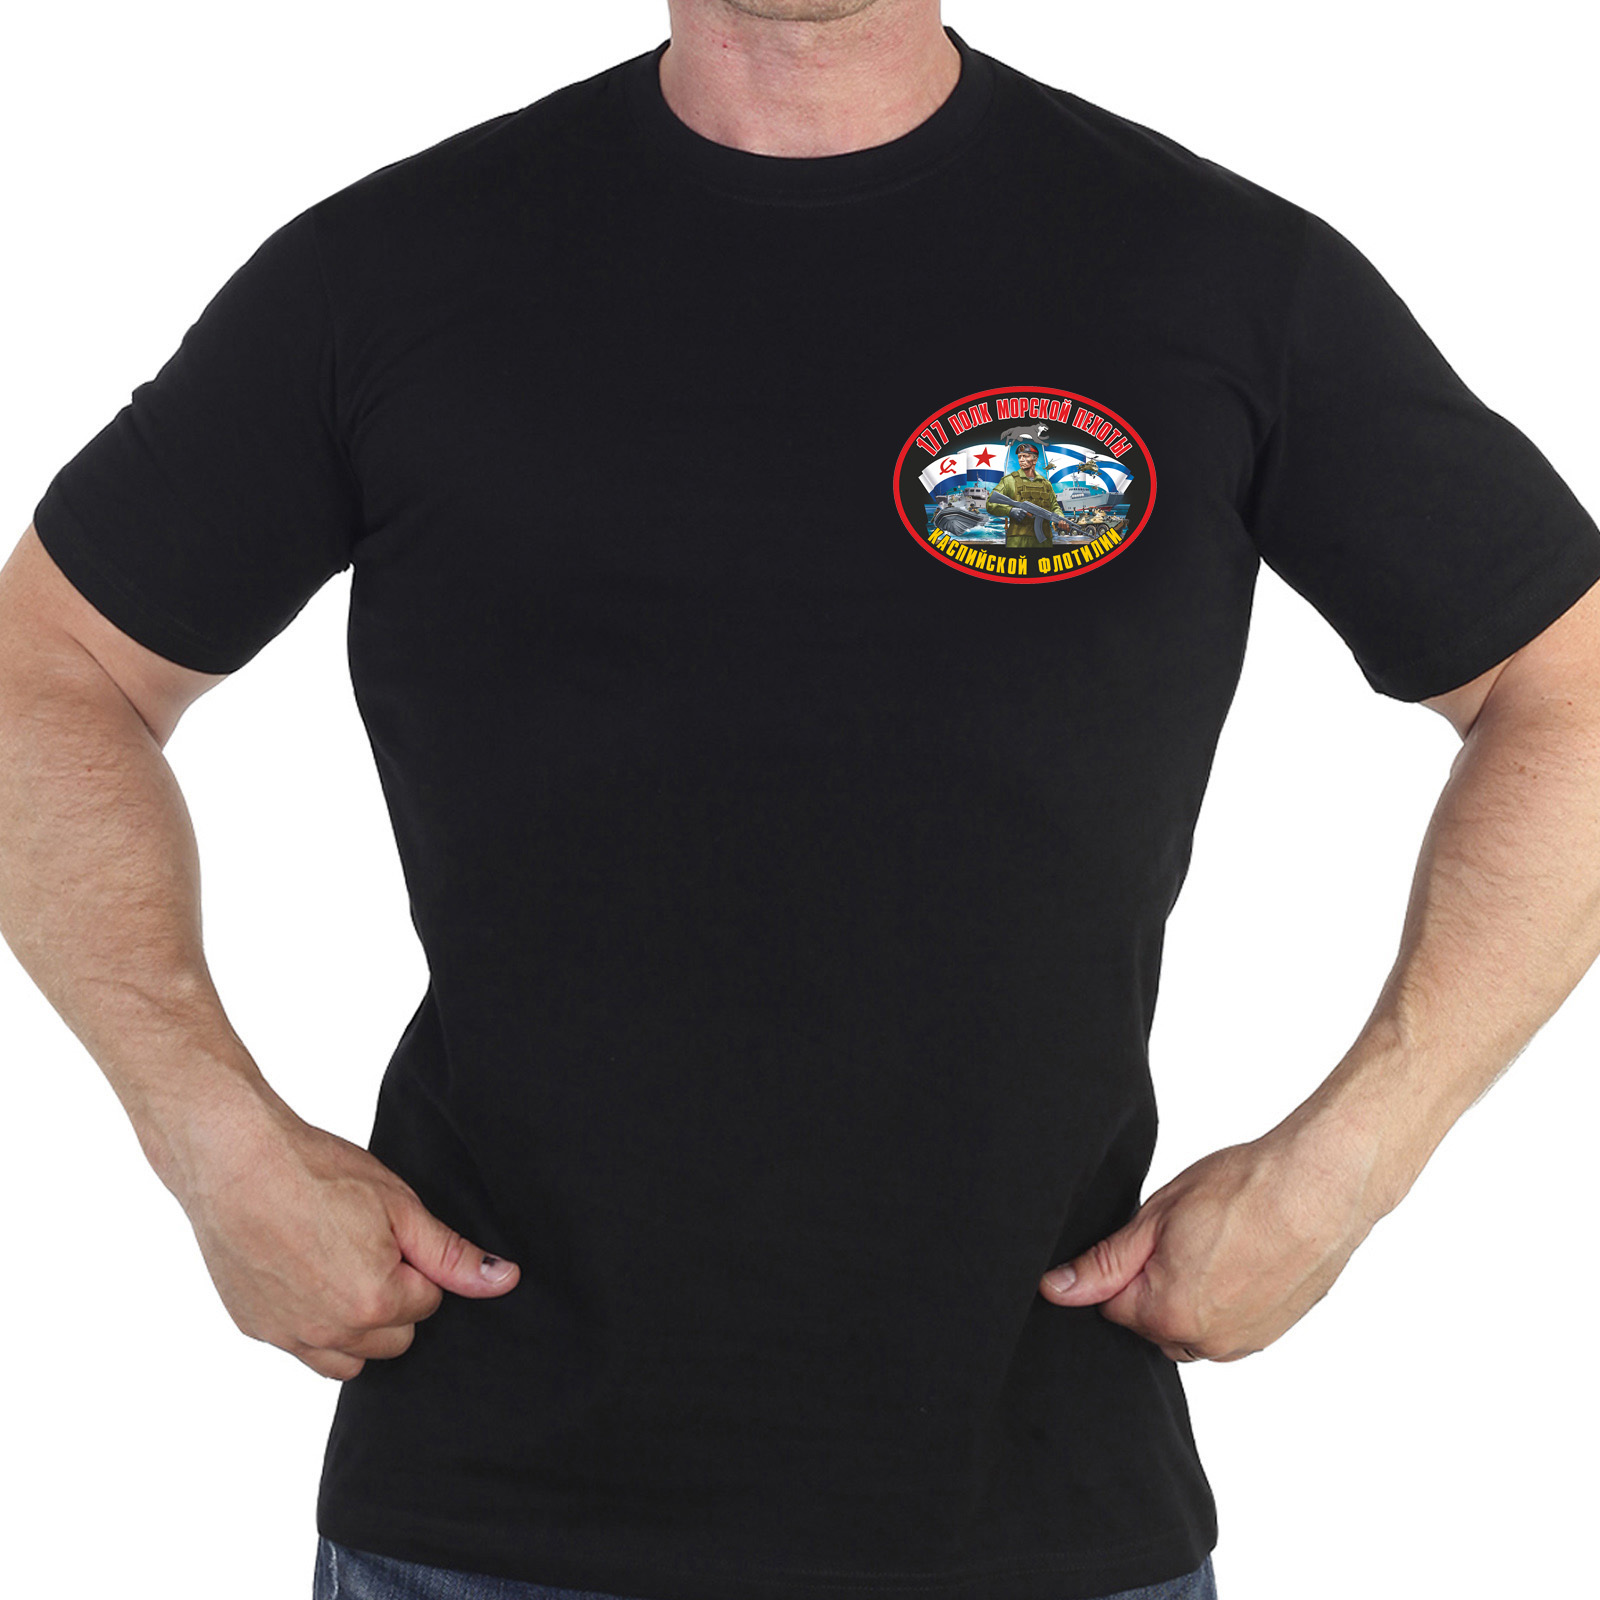 Купить крутую черную футболку с термонаклейкой 177 Полк Морской Пехоты по лучшей цене